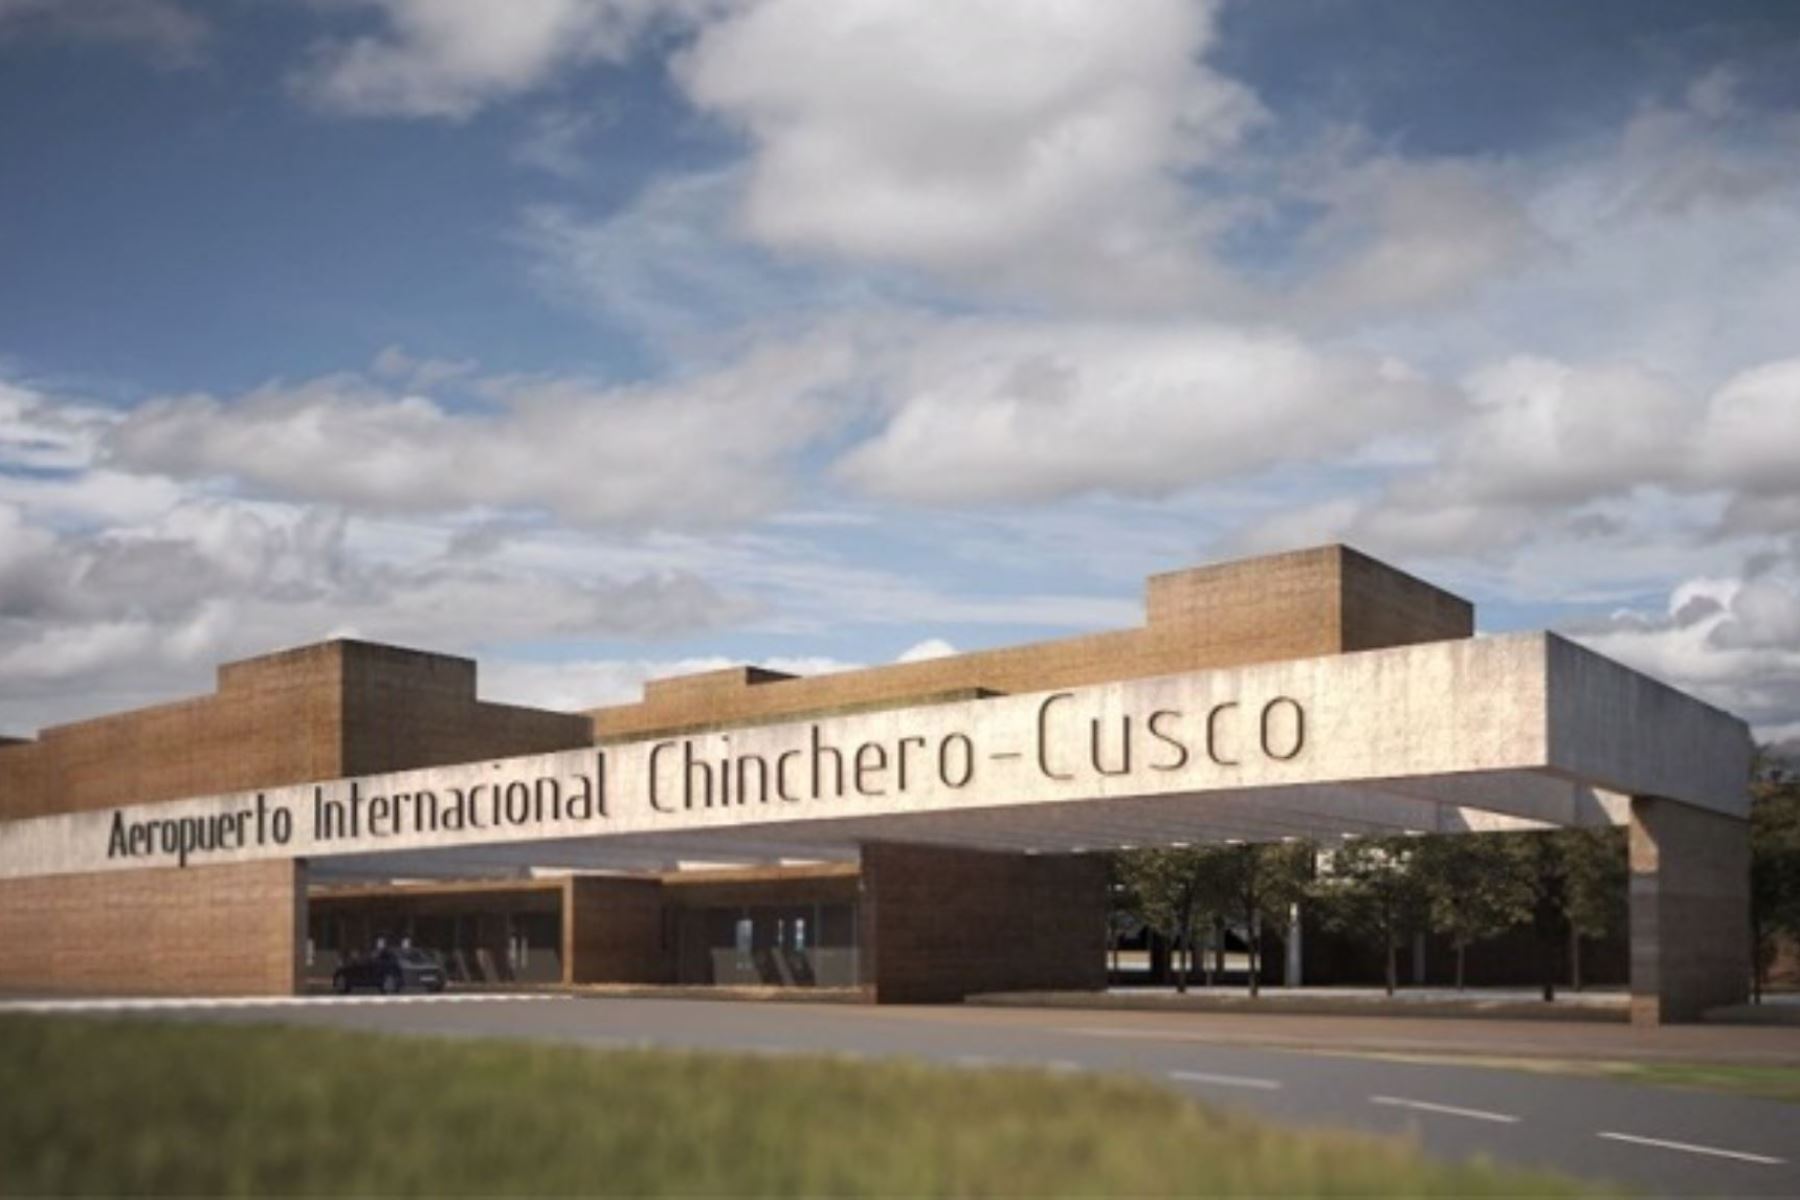 Las operaciones y mantenimiento del futuro aeropuerto internacional de Chinchero, en Cusco, estarán a cargo de un operador aeroportuario de primer nivel, anunció el MTC.